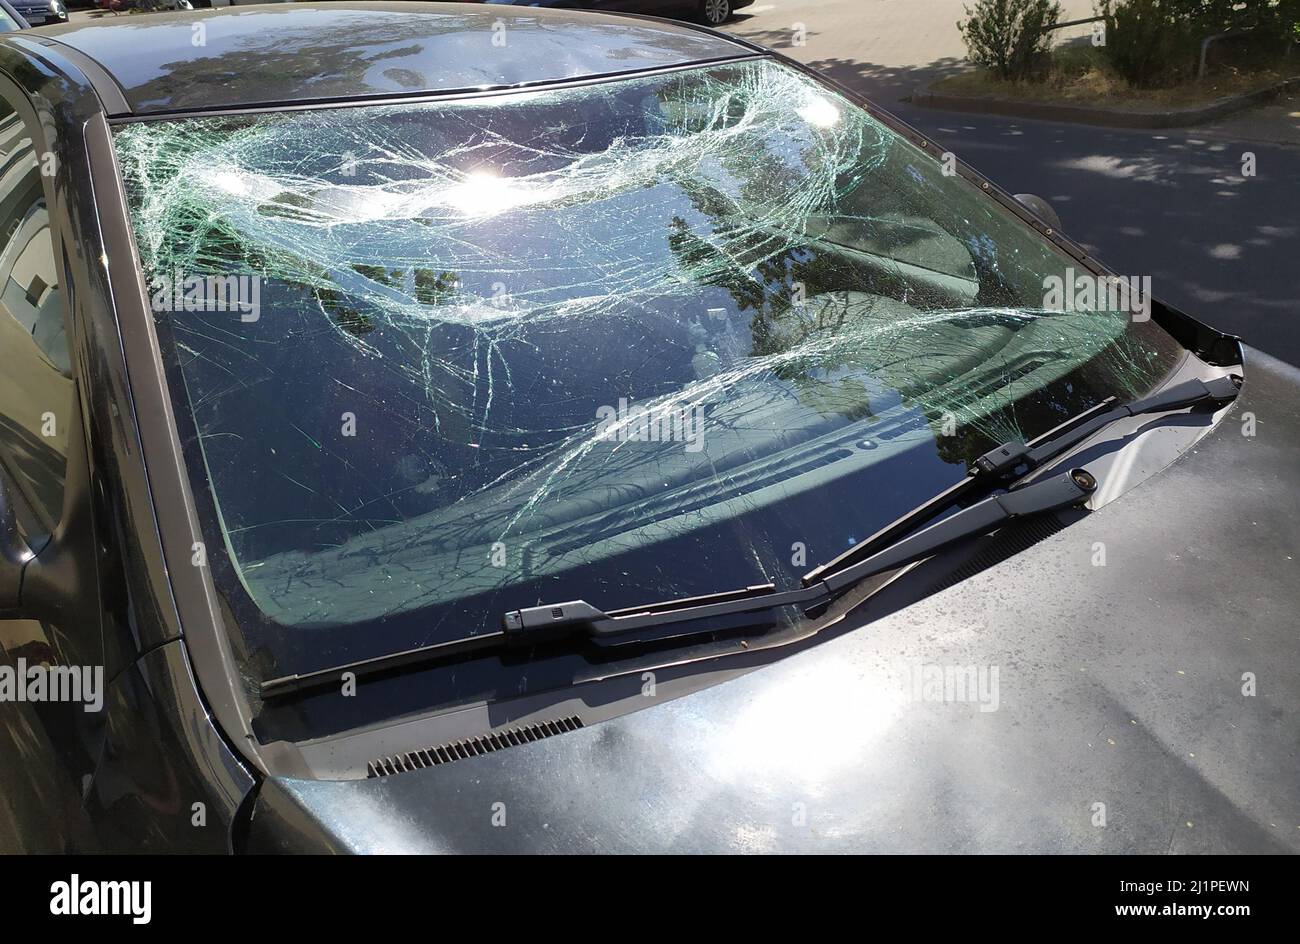 Vitre cassée du pare-brise après un accident de voiture lourd a détruit le pare-brise et a causé une blessure qui a cassé et cassé la vitre Banque D'Images